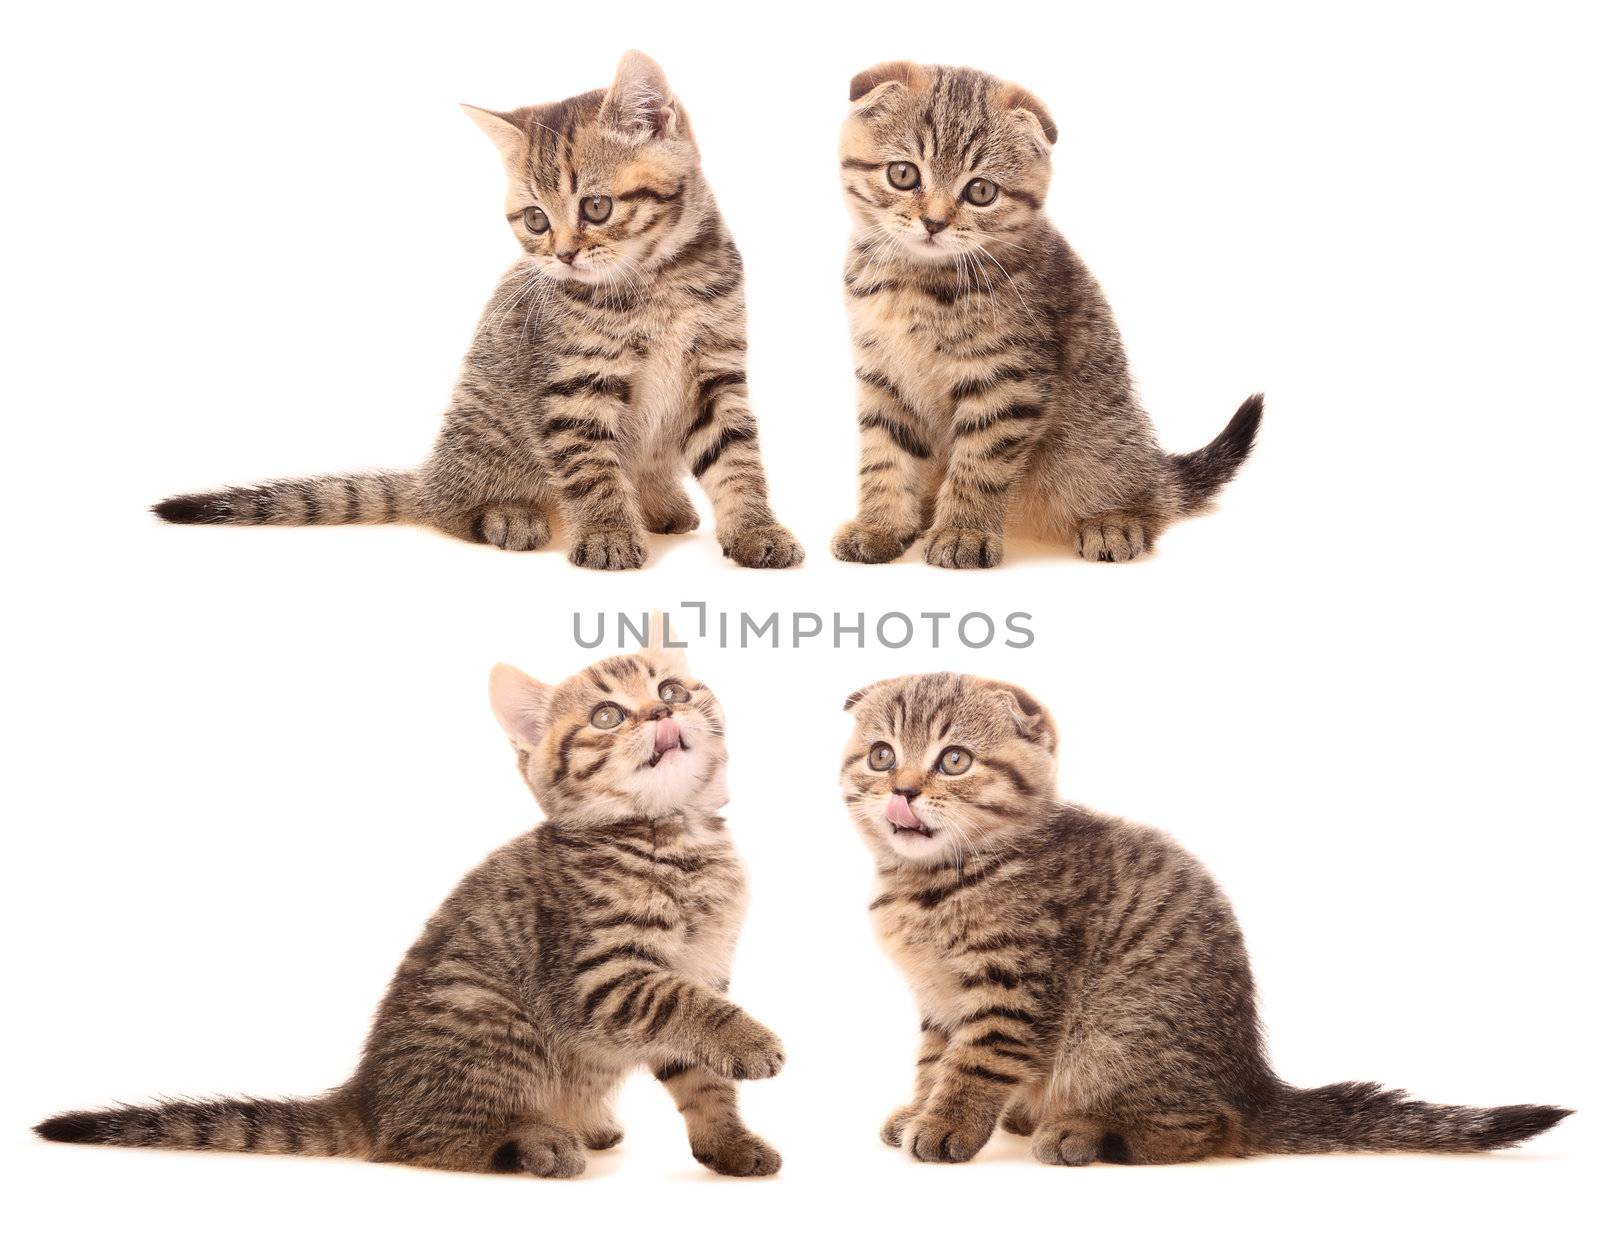 Kittens by ksenish